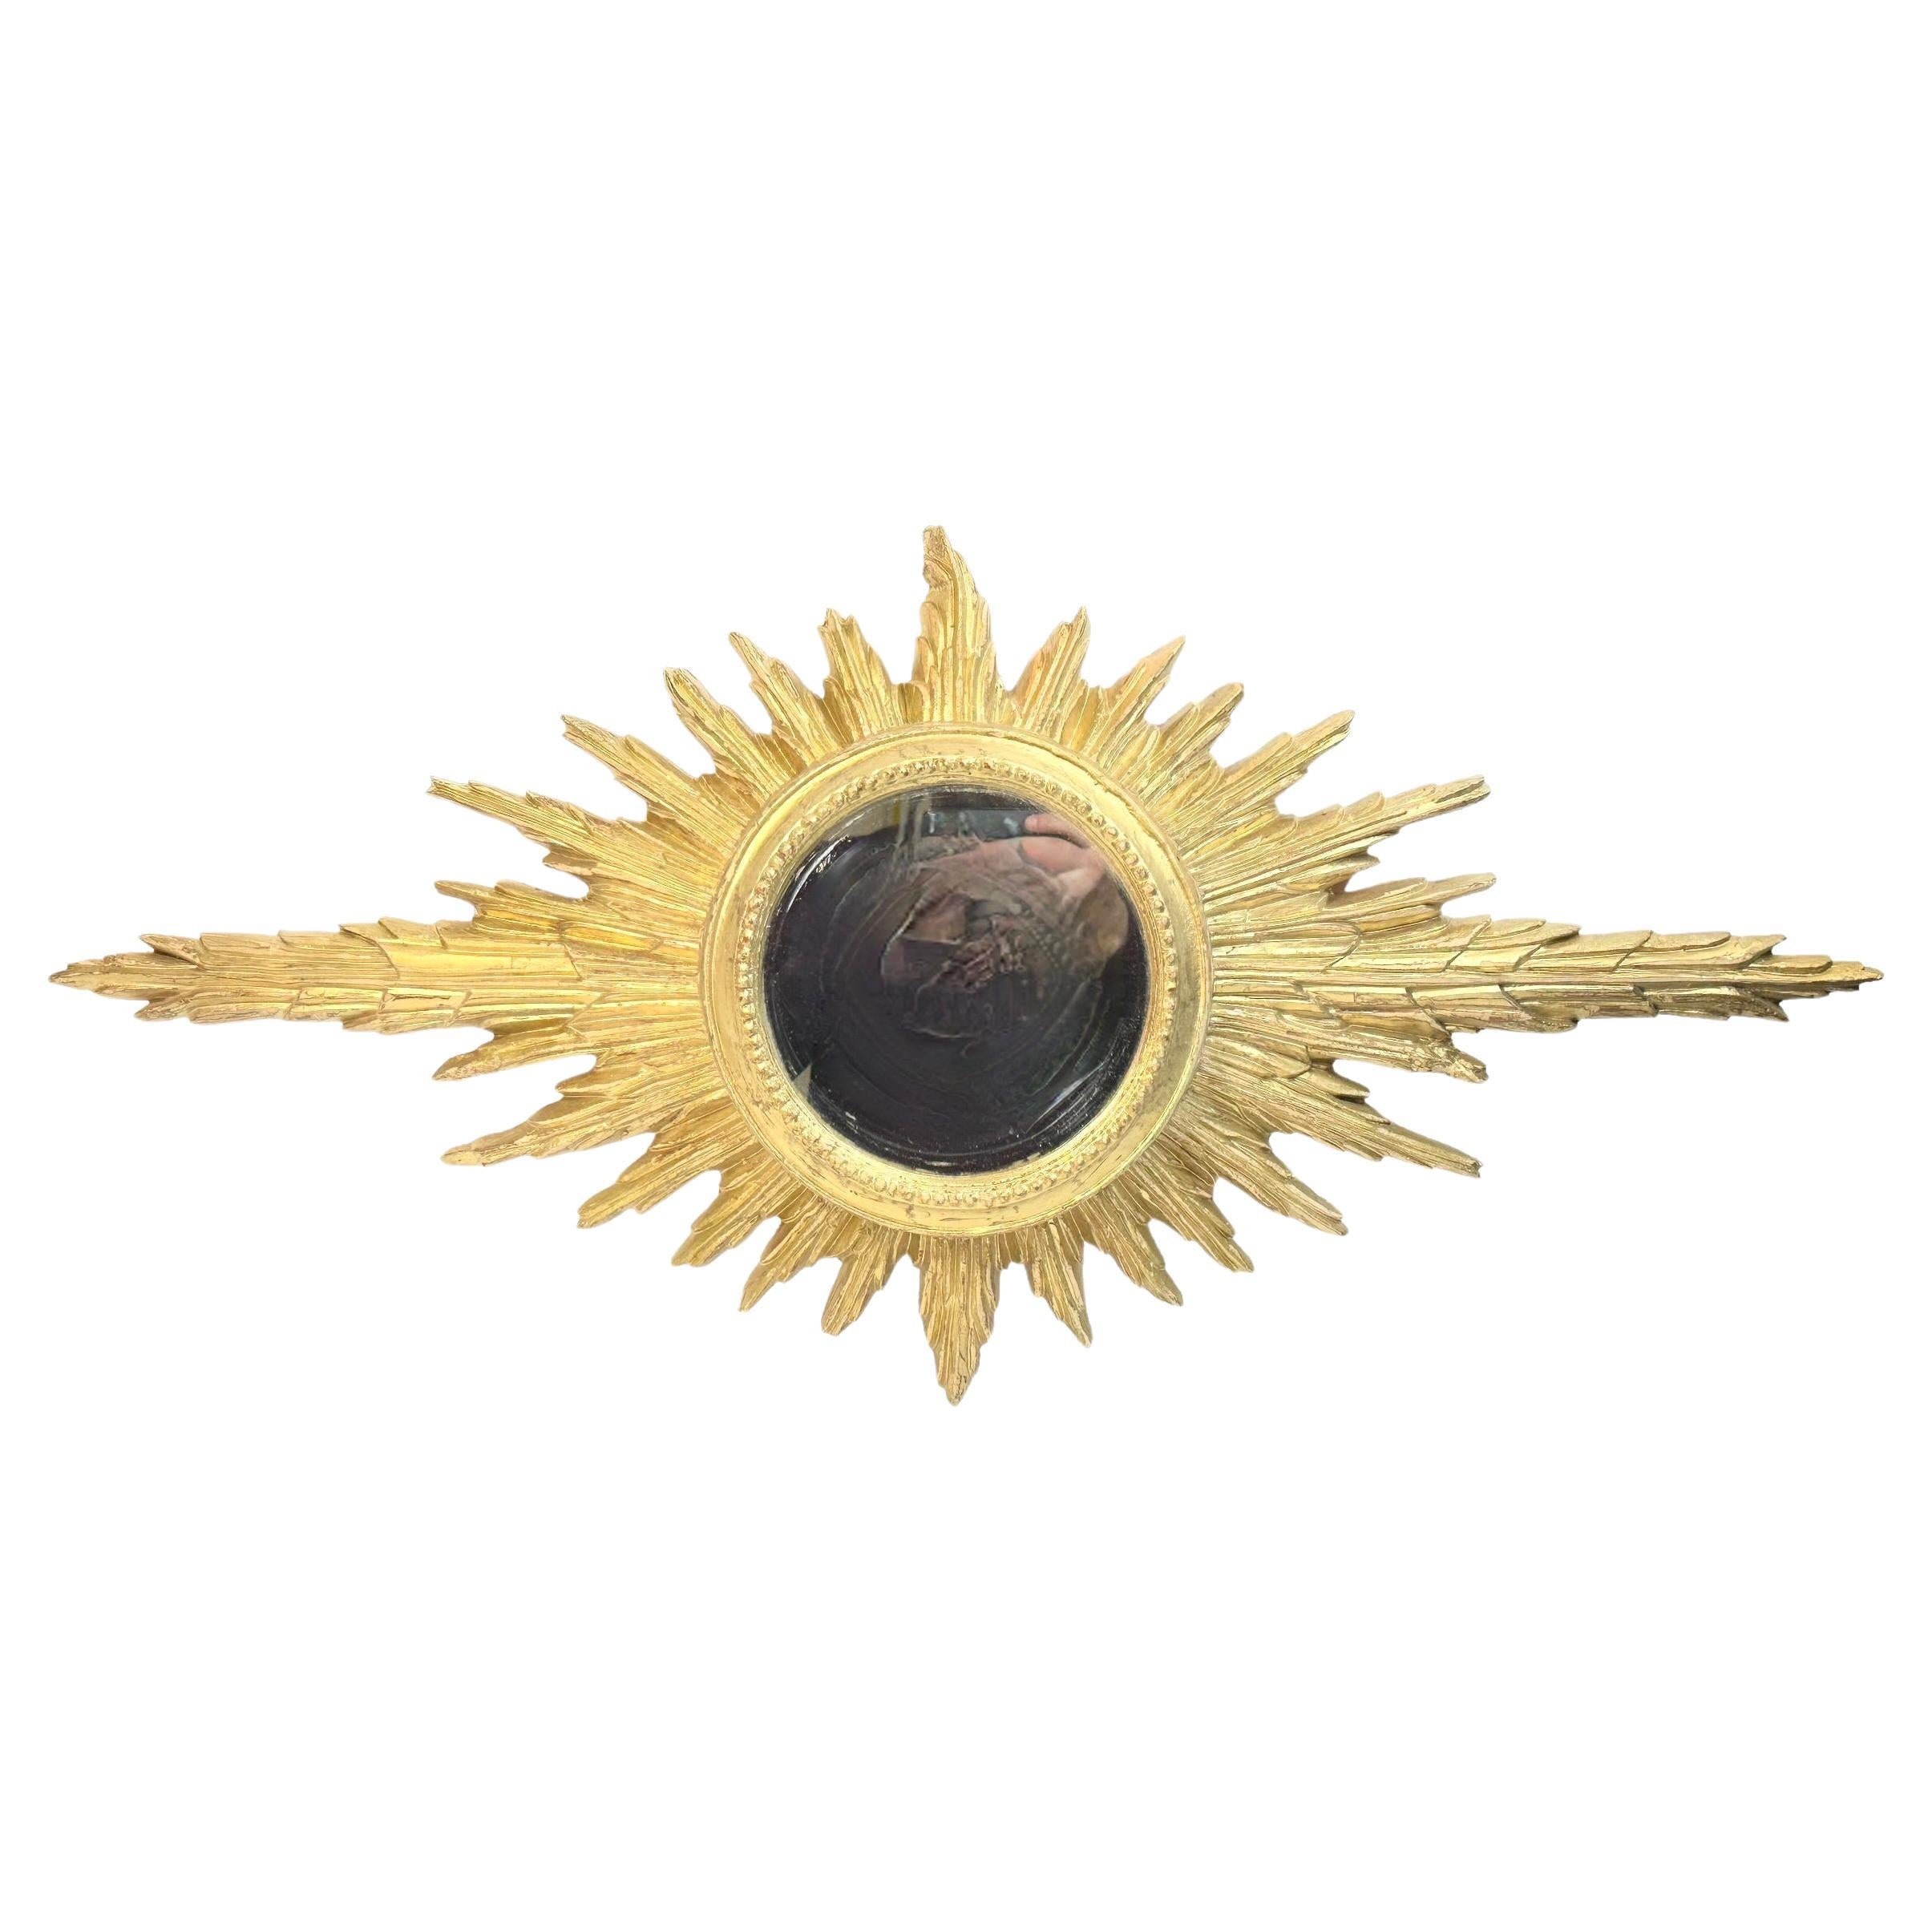 Un magnifique miroir en forme de soleil ou d'étoile. Fabriqué en bois doré. Il mesure approximativement : 36,5